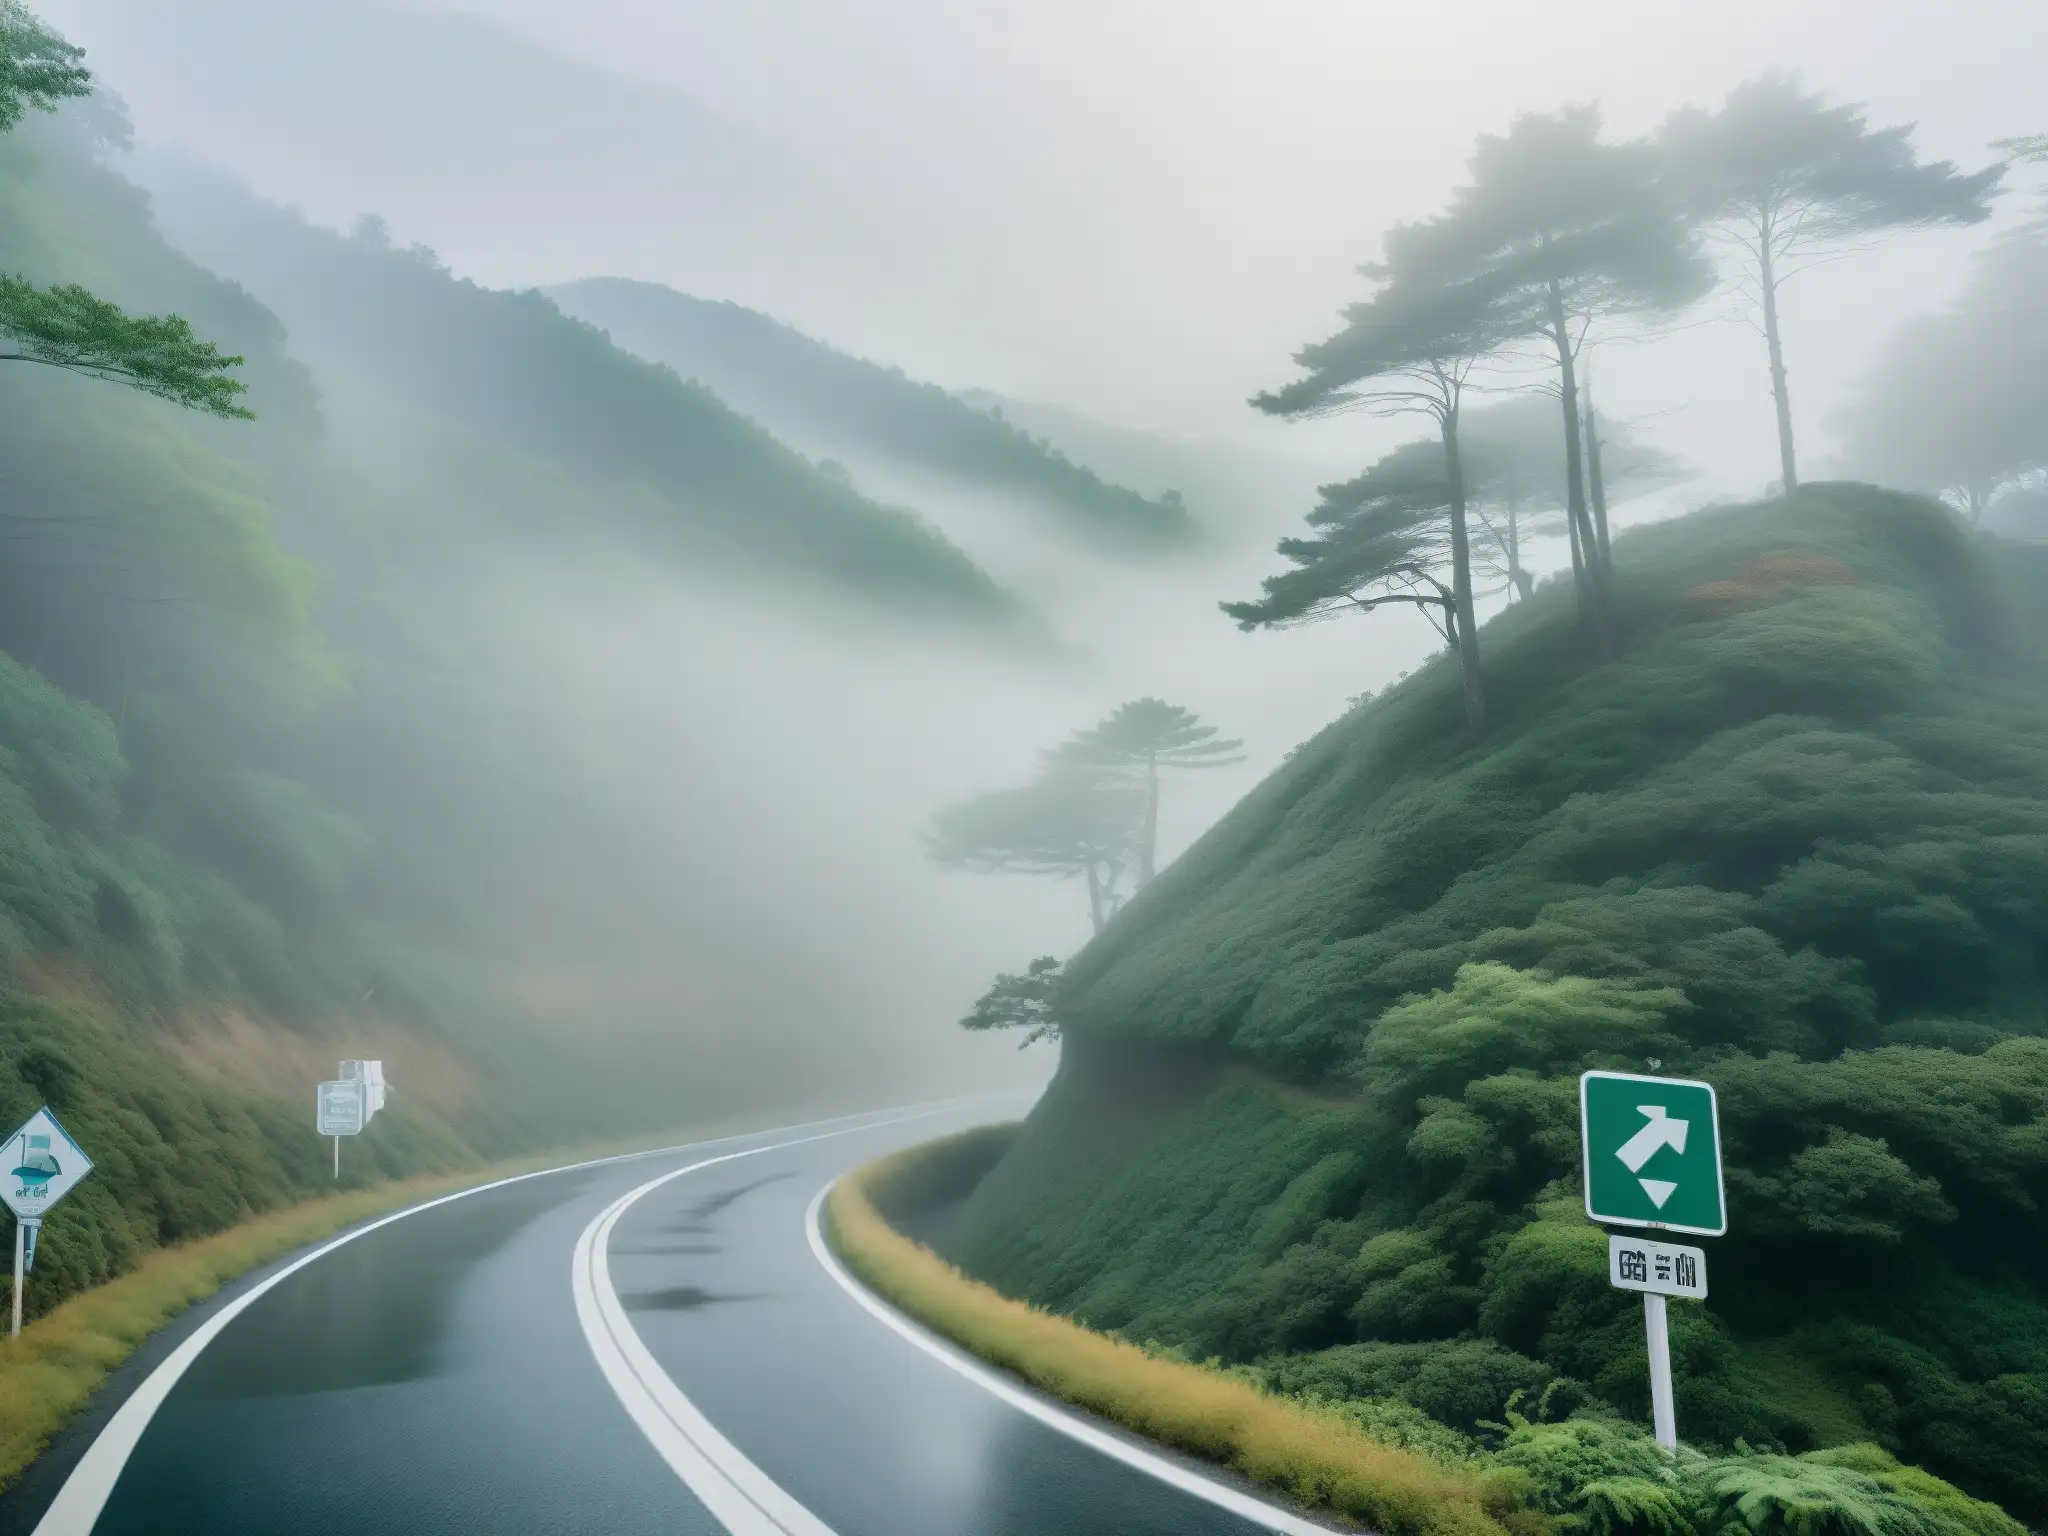 Un camino serpenteante y neblinoso en Corea del Sur, rodeado de densos bosques y envuelto en un silencio inquietante